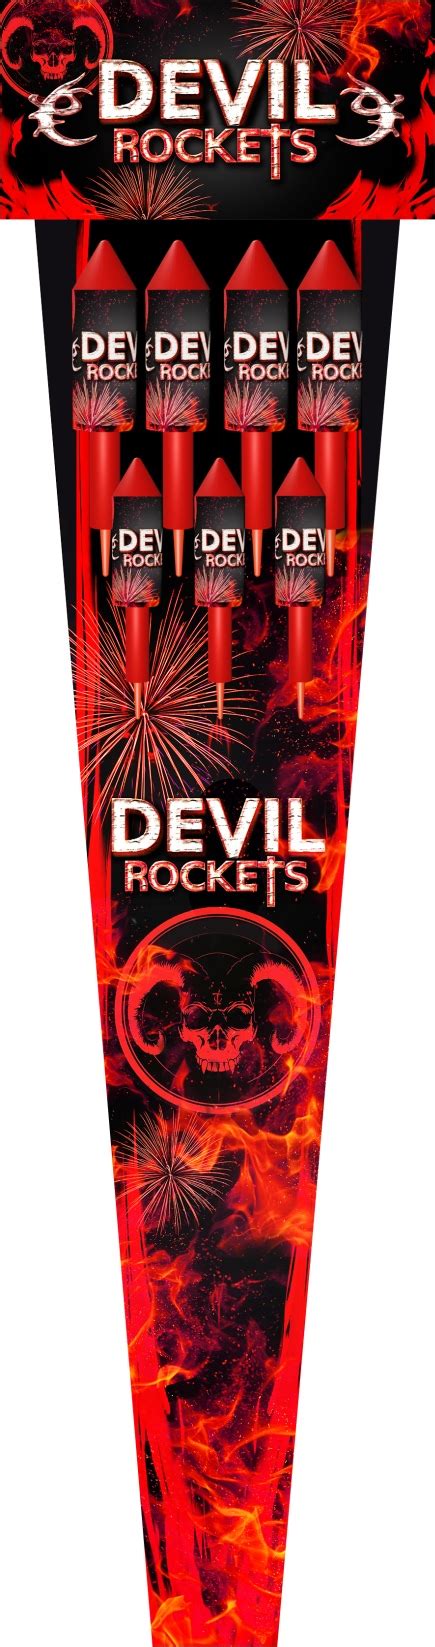 Devil Rocket Klásek Trading